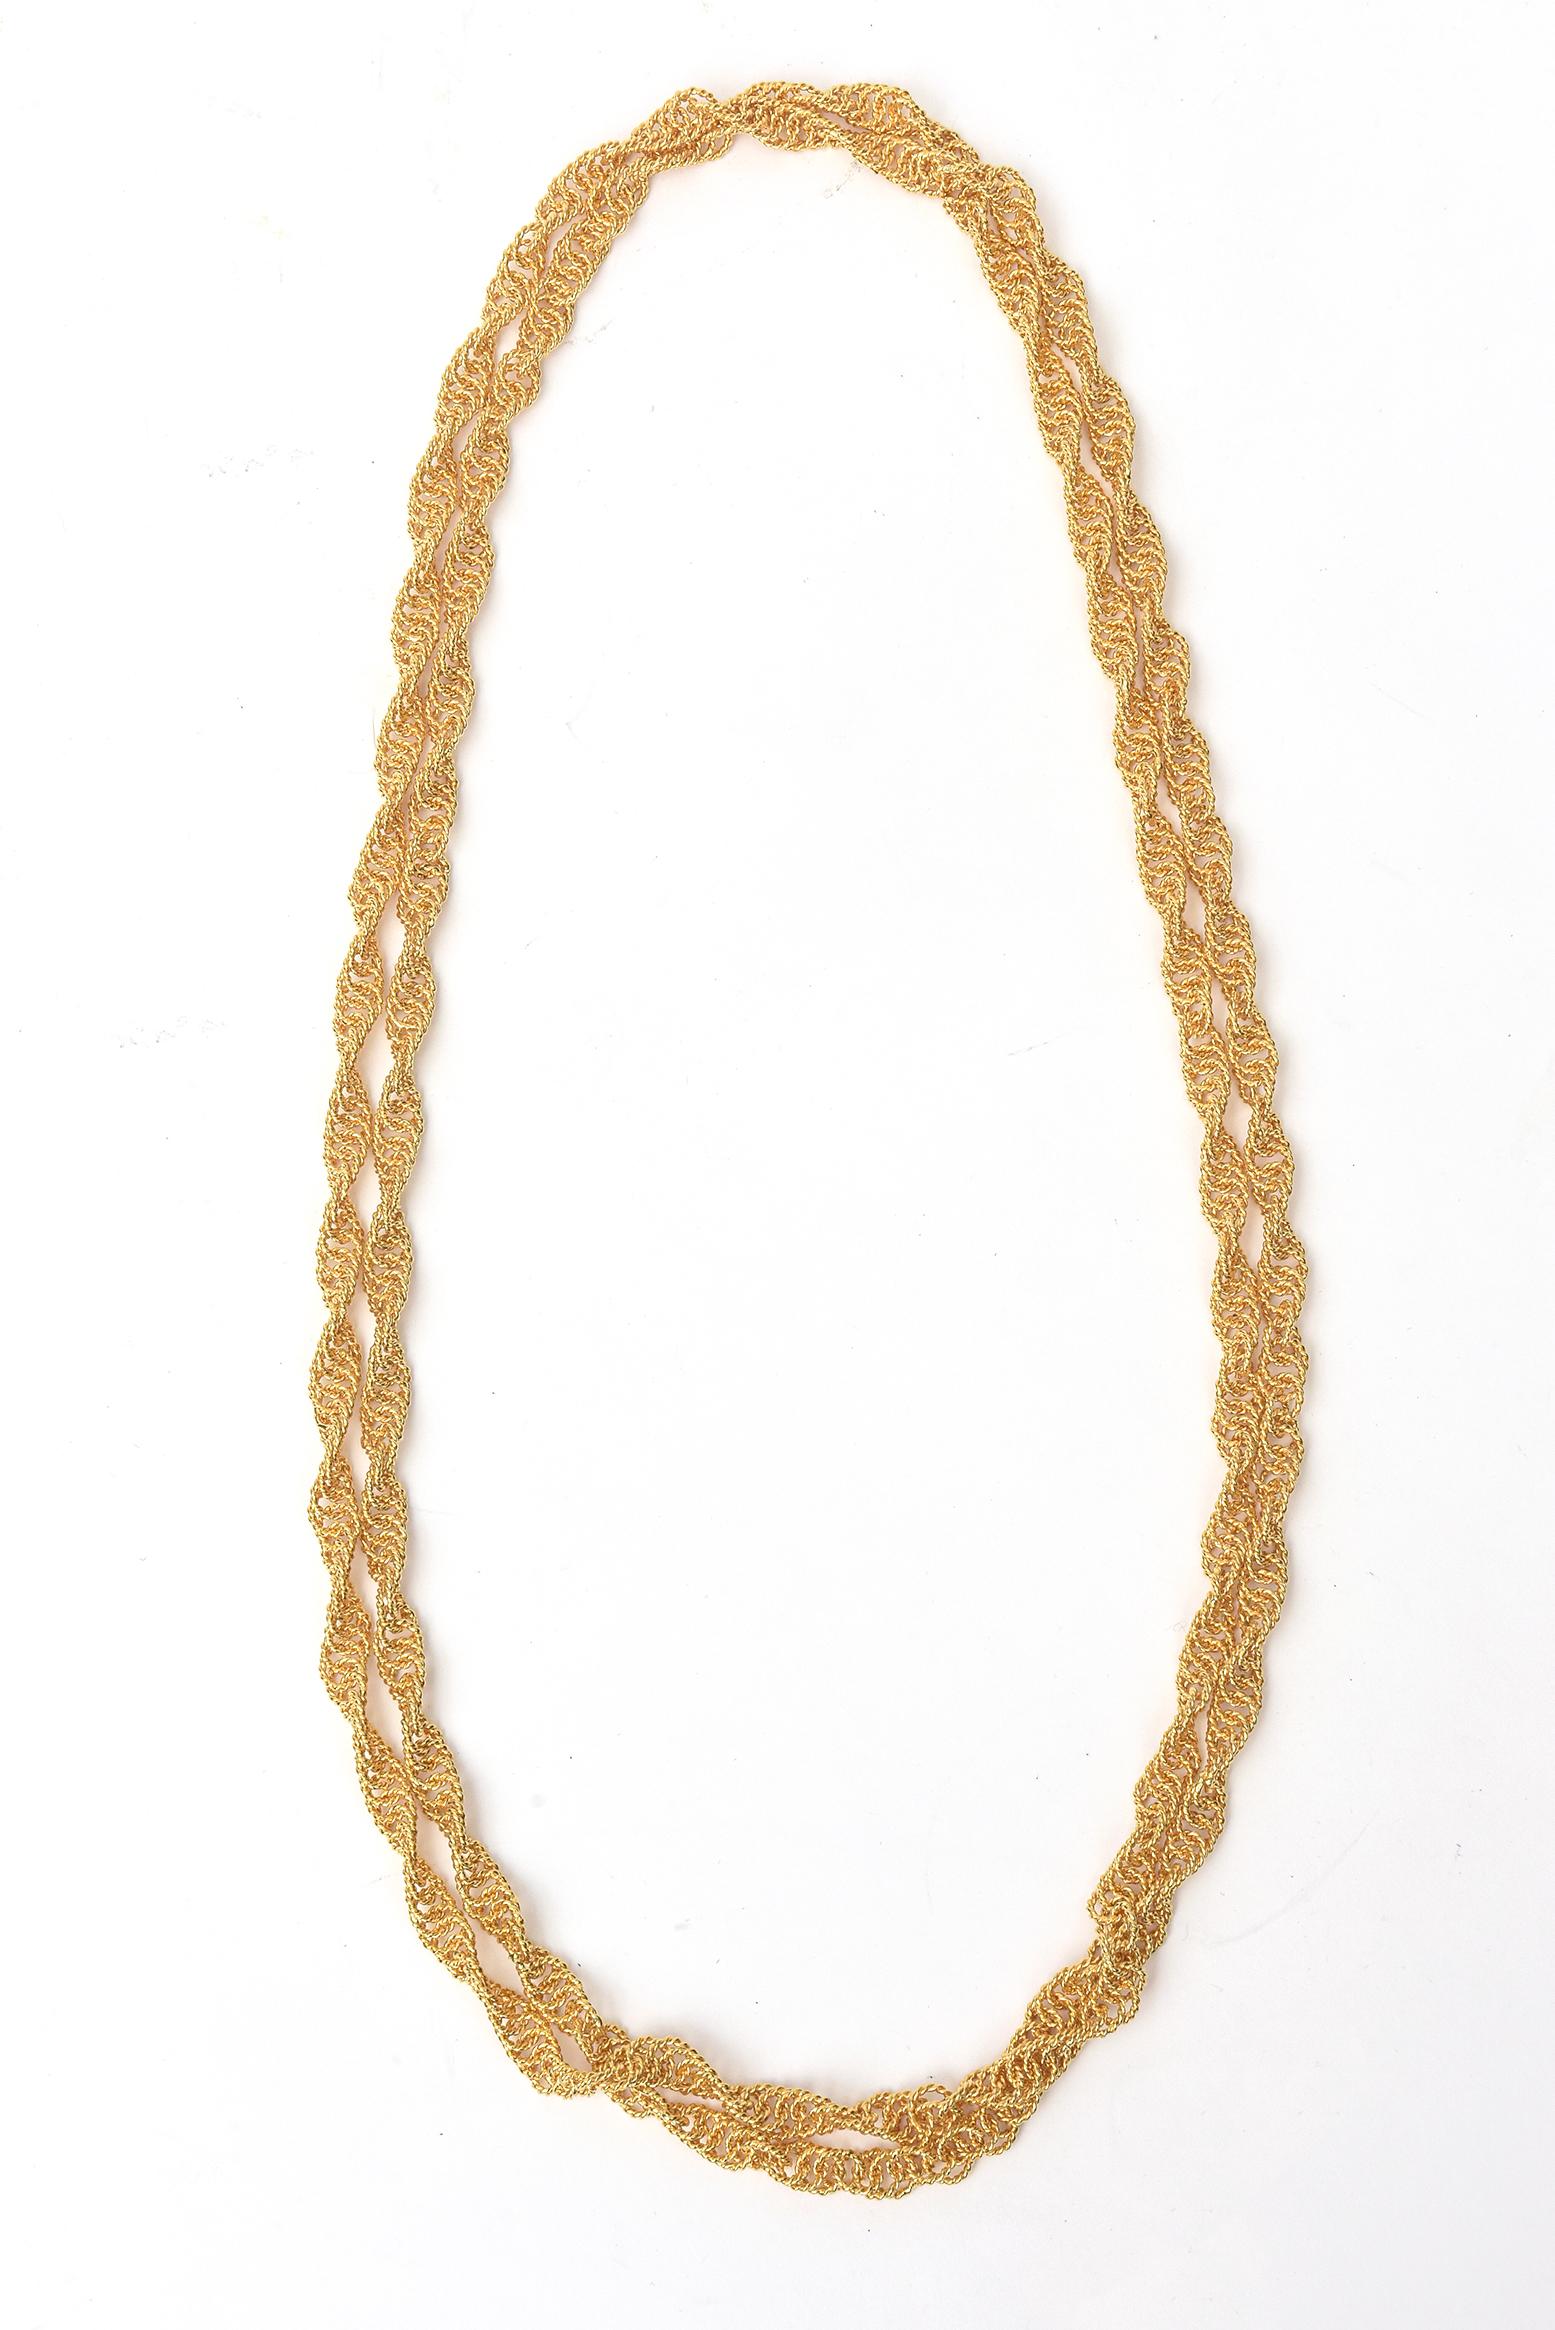 Diese fabelhafte lange 1960's Spirale Kette wickeln Halskette ist alles vergoldet und sehr reich suchen. Es kann auf viele verschiedene Arten getragen werden, als Halsband, mehrfach gewickelt oder doppelt und dreifach um den Hals. Man kann es nach